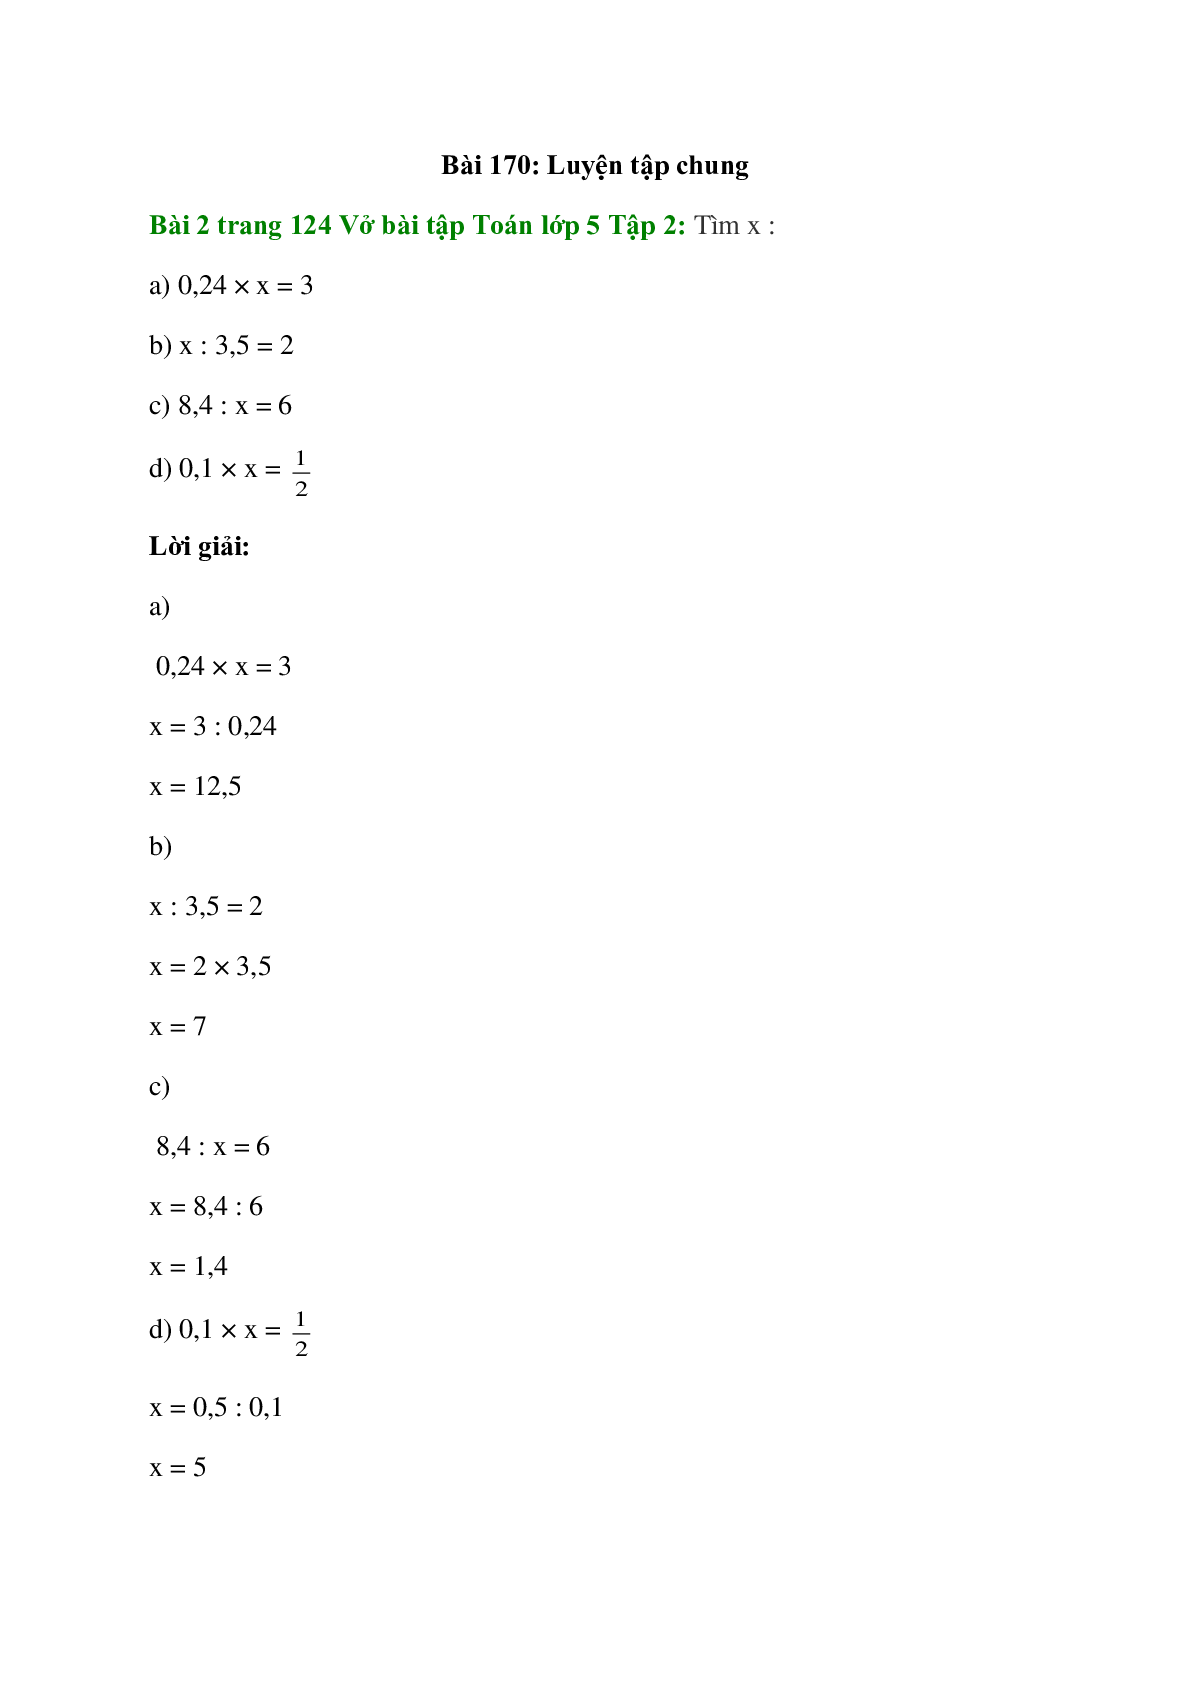 Tìm x: 0,24 × x = 3; x : 3,5 = 2 (trang 1)